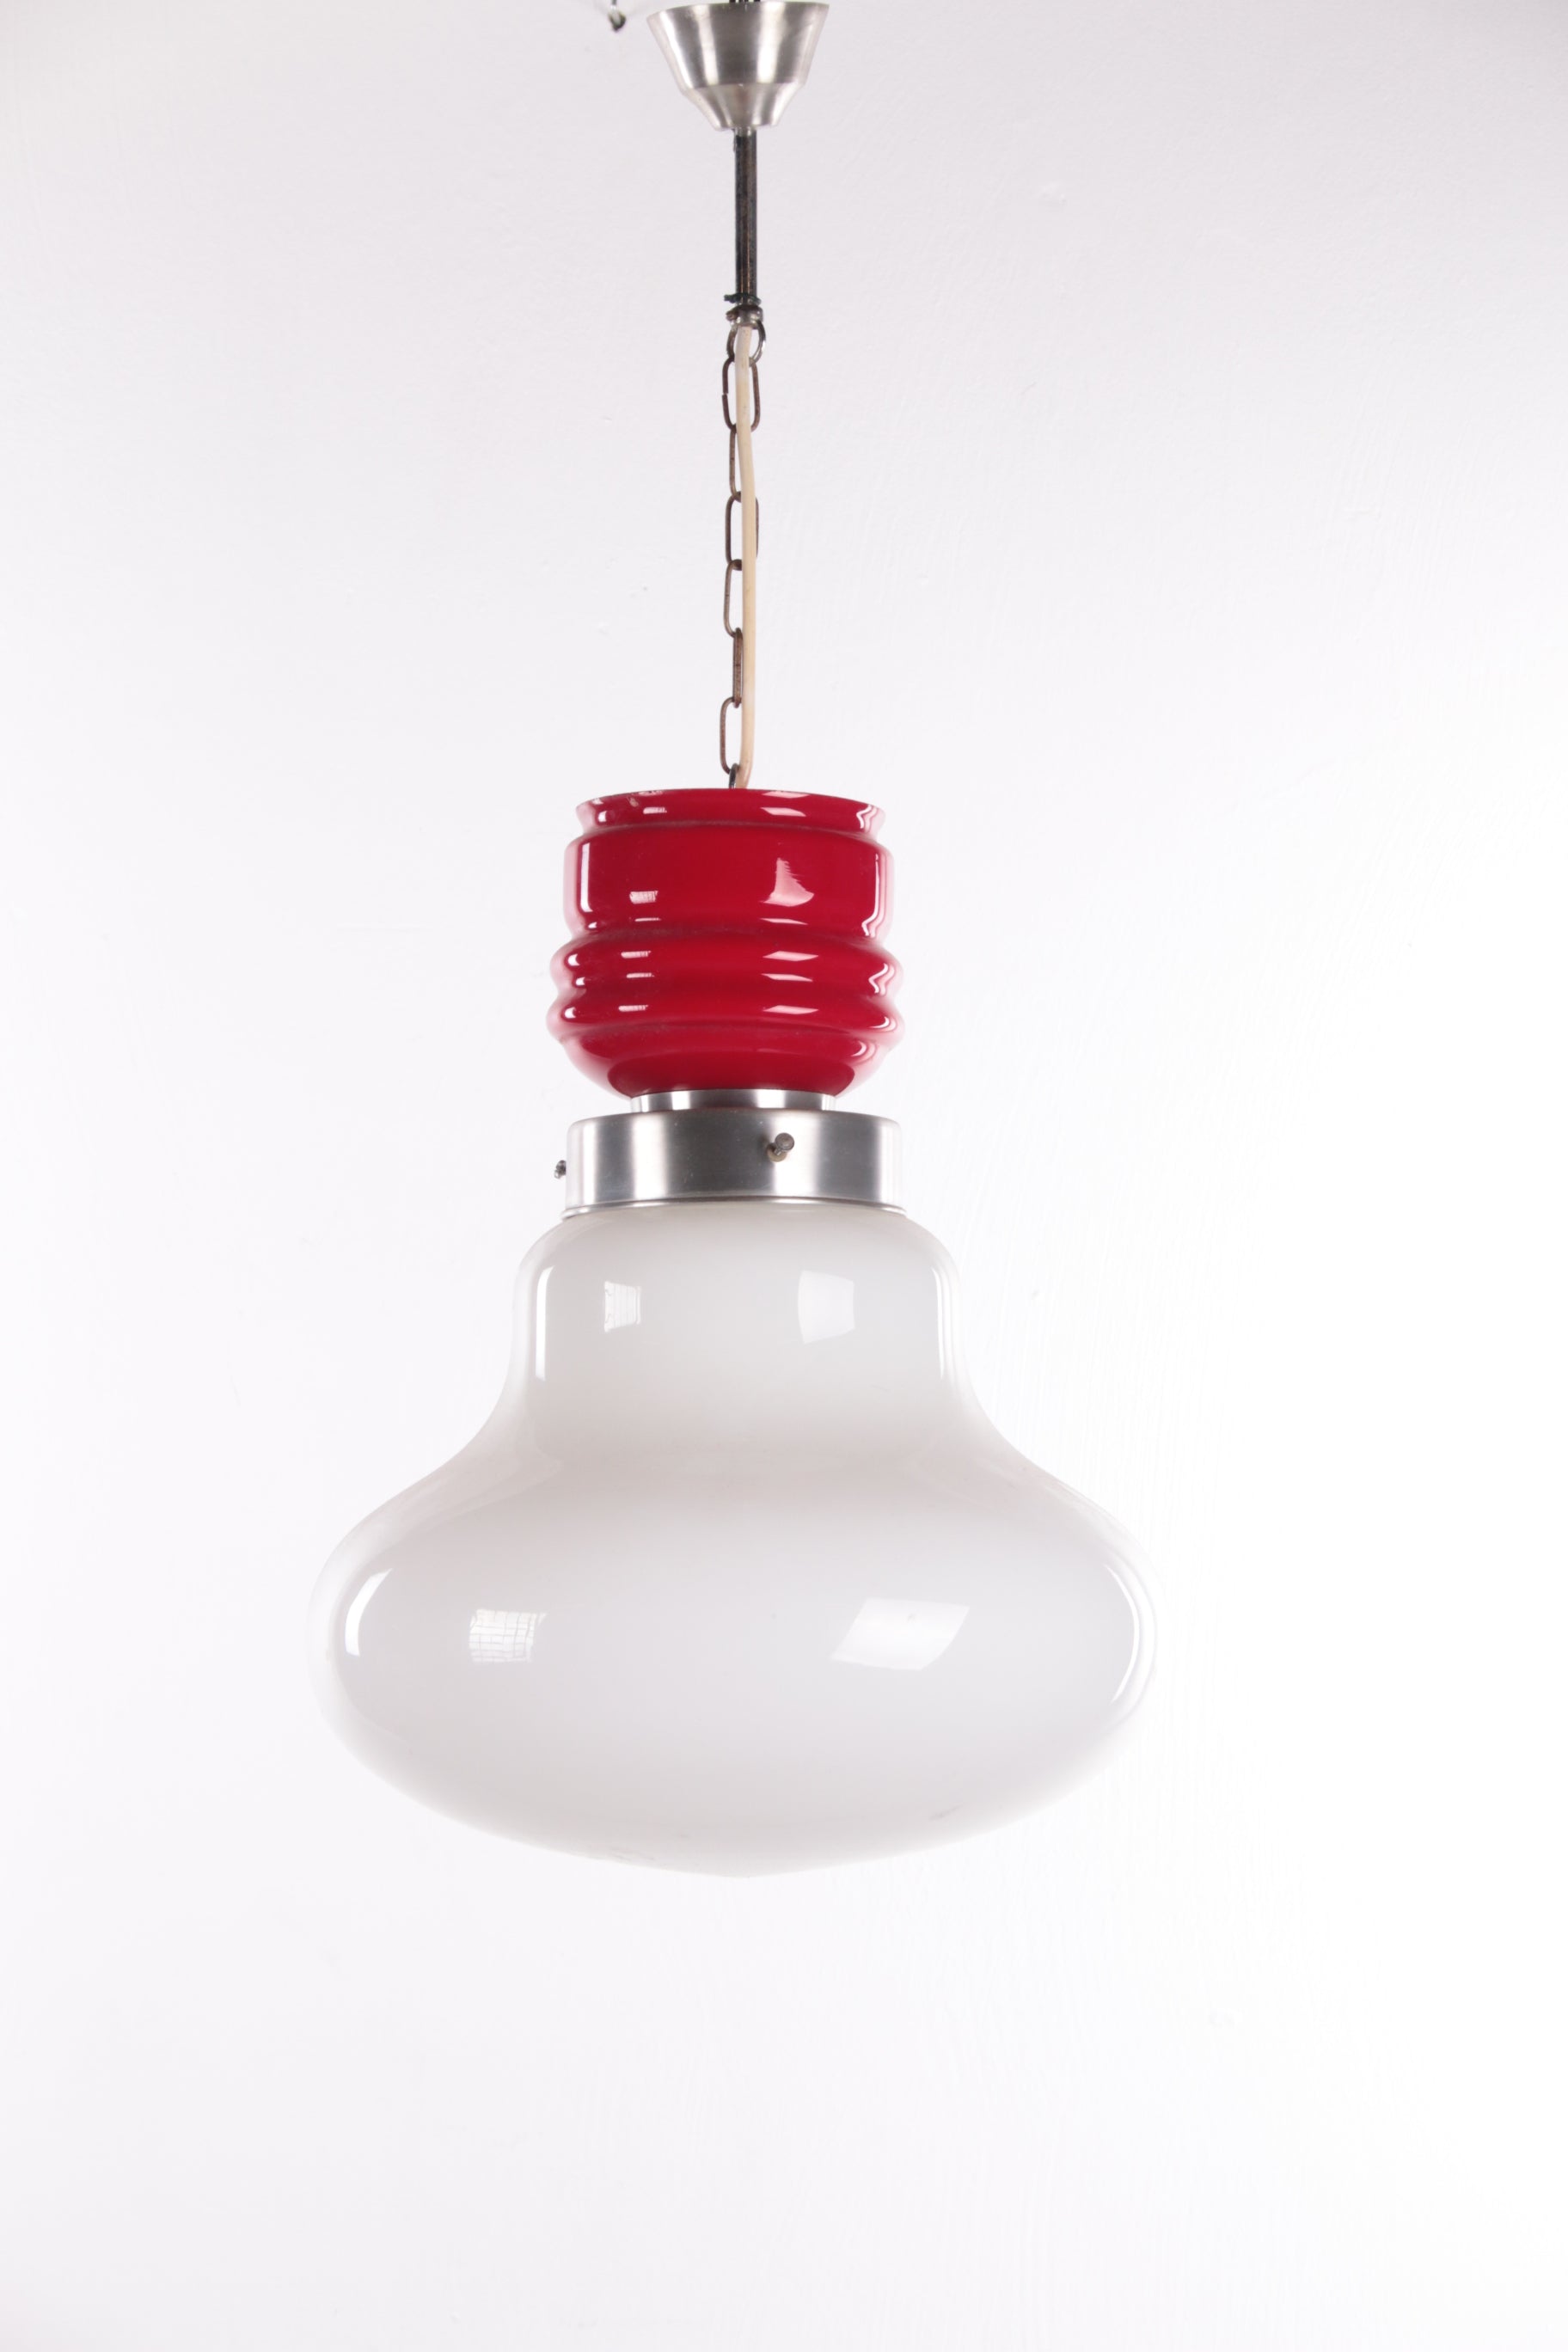 Vintage Hanglamp rood met wit melkglas jaren 60 voorkant